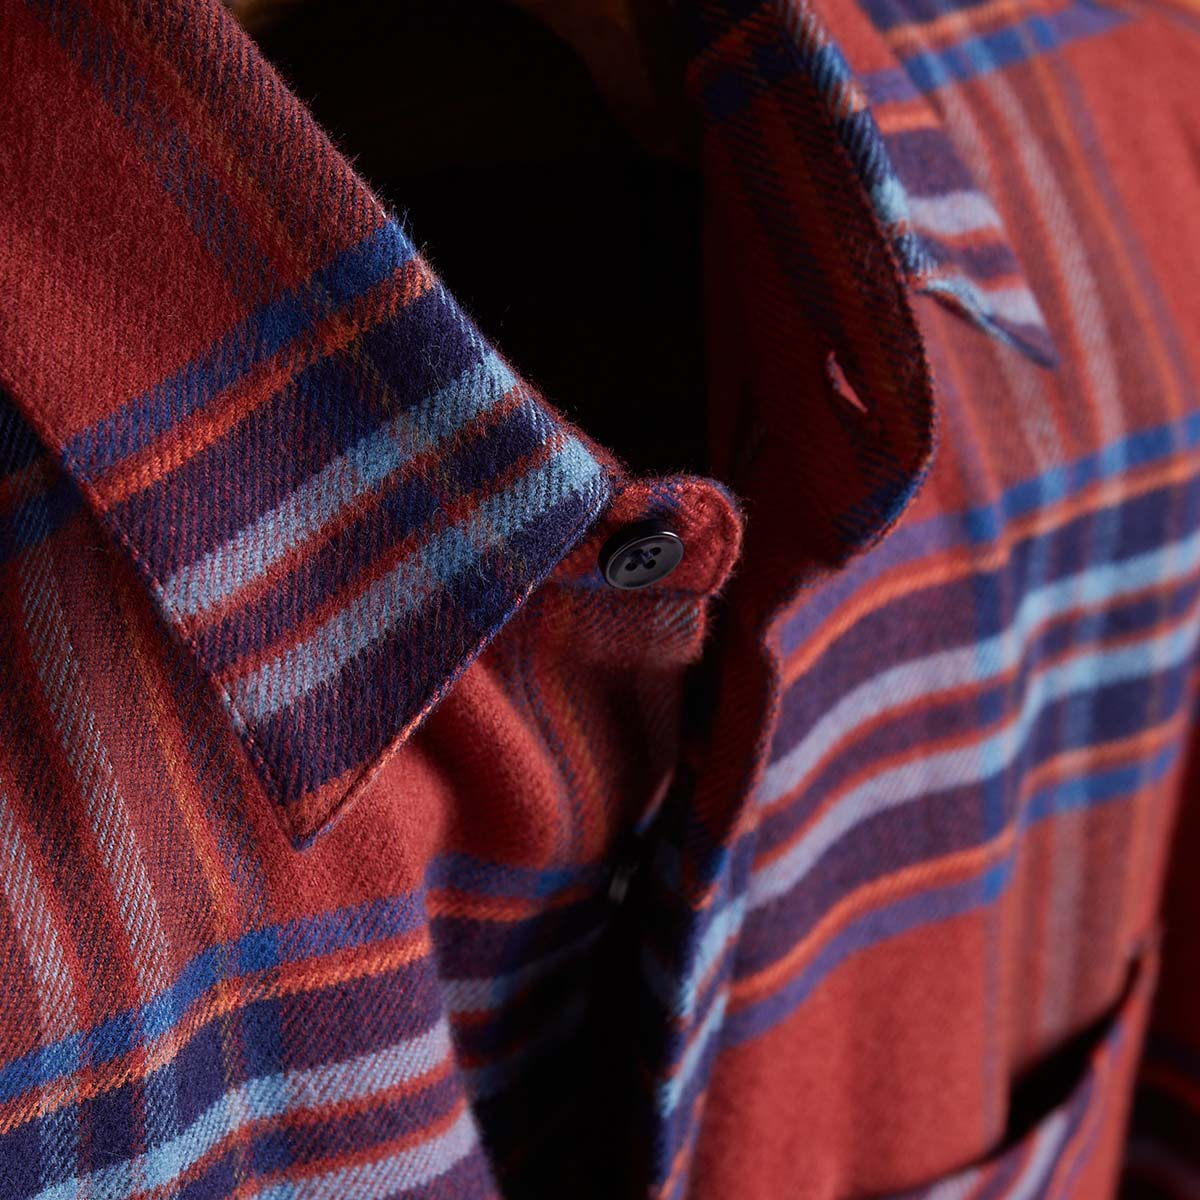 Portuguese Flannel Pau Checked Cotton-Flannel Shirt, gemaakt van de fijnste exclusieve stoffen